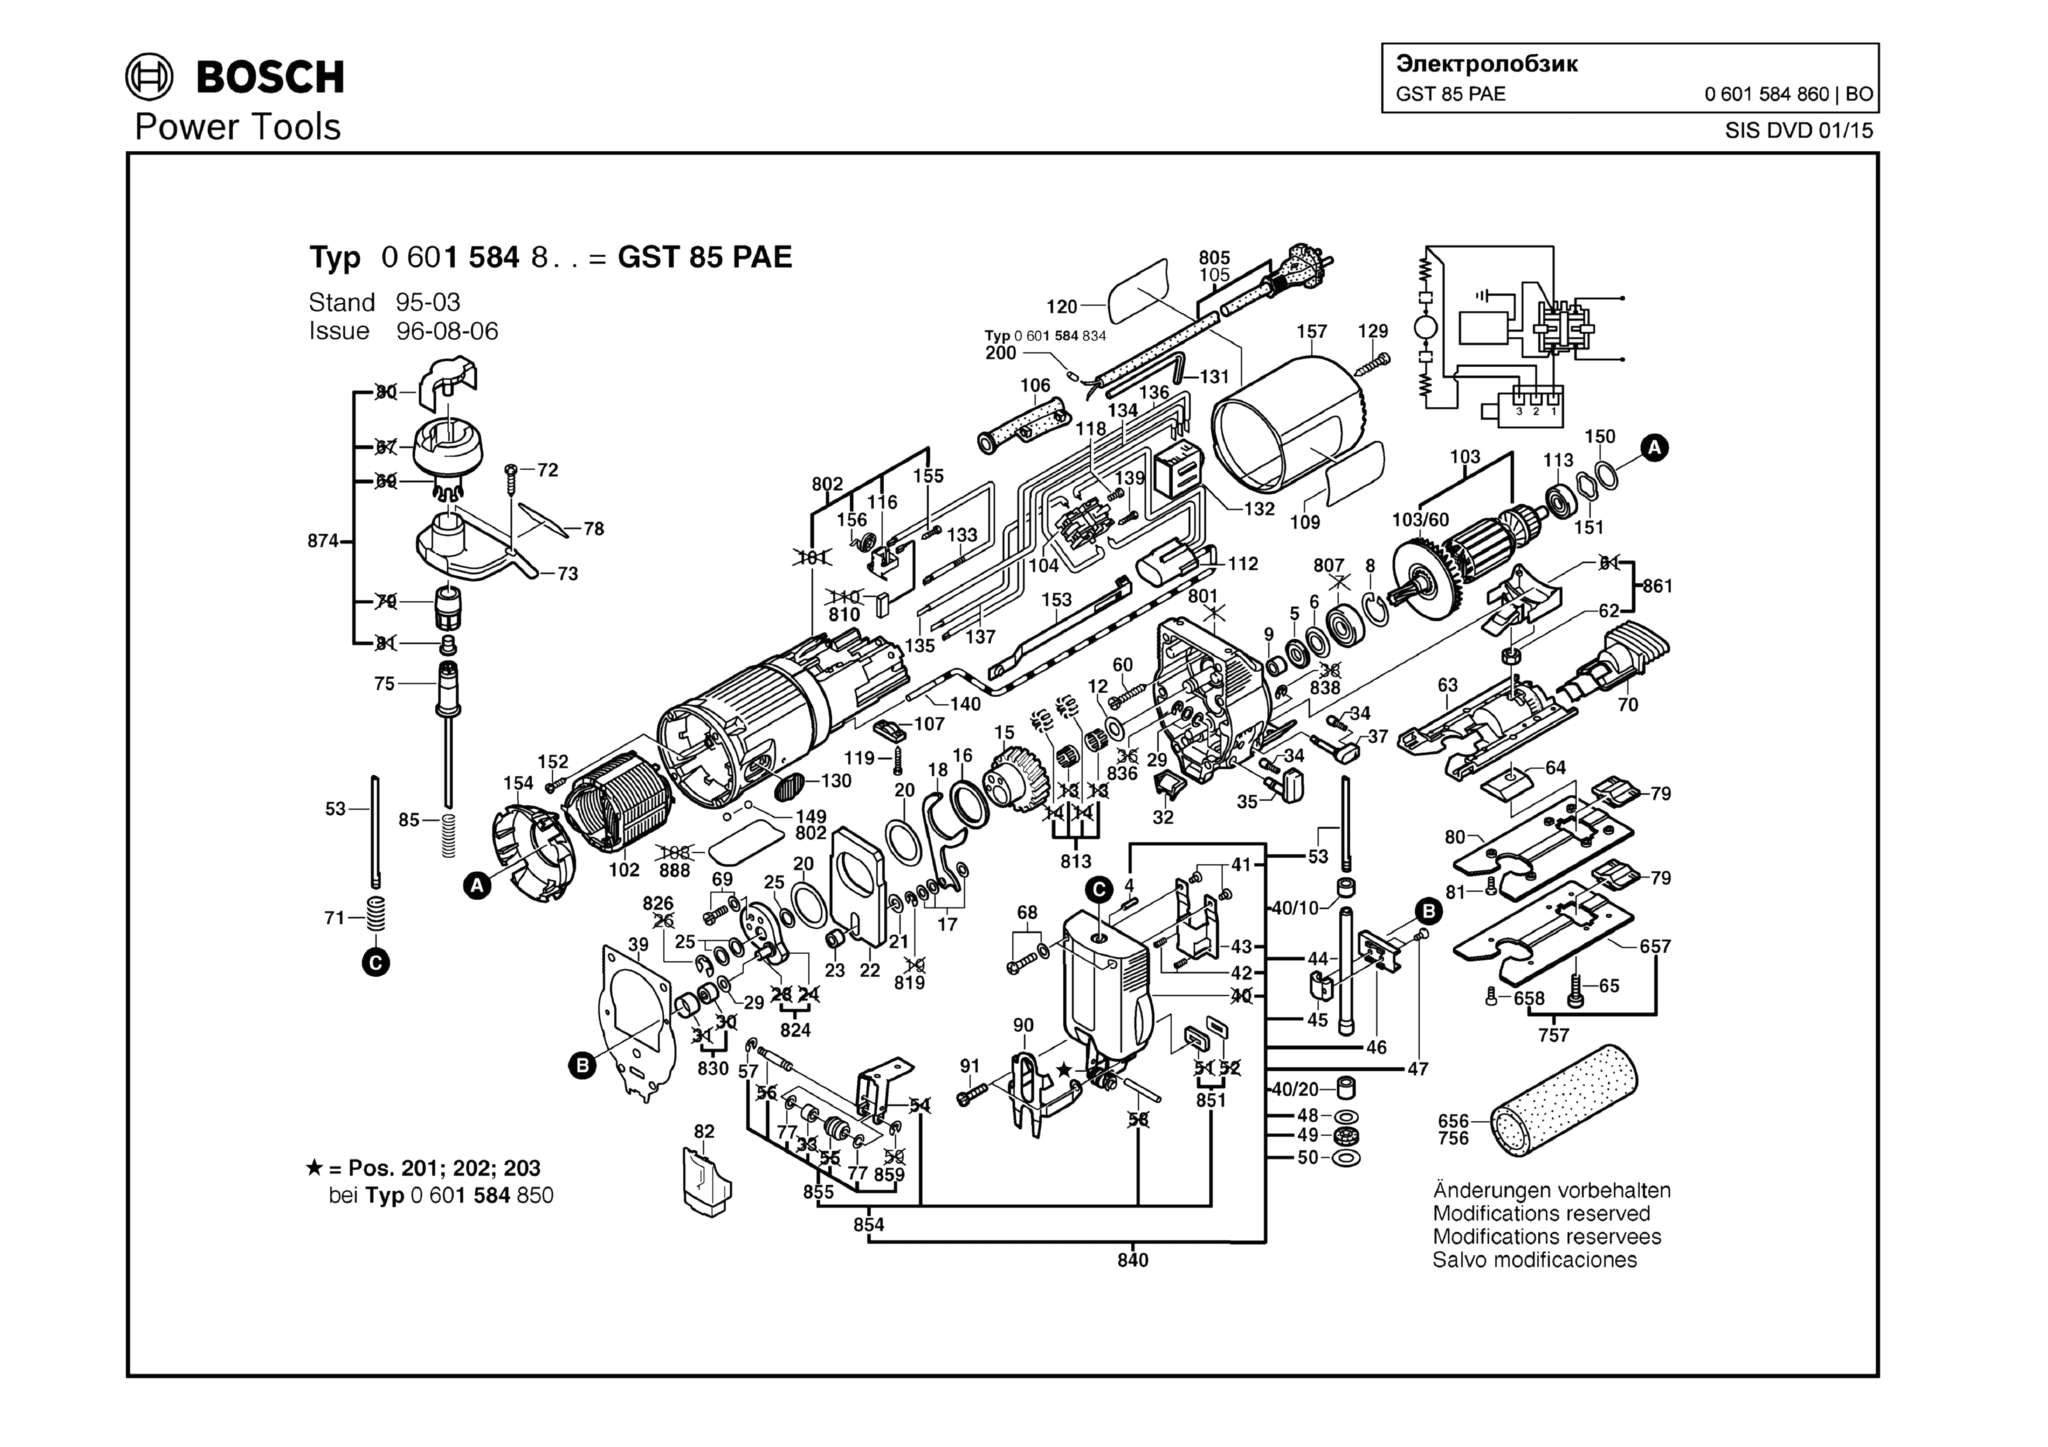 Запчасти, схема и деталировка Bosch GST 85 PAE (ТИП 0601584860)